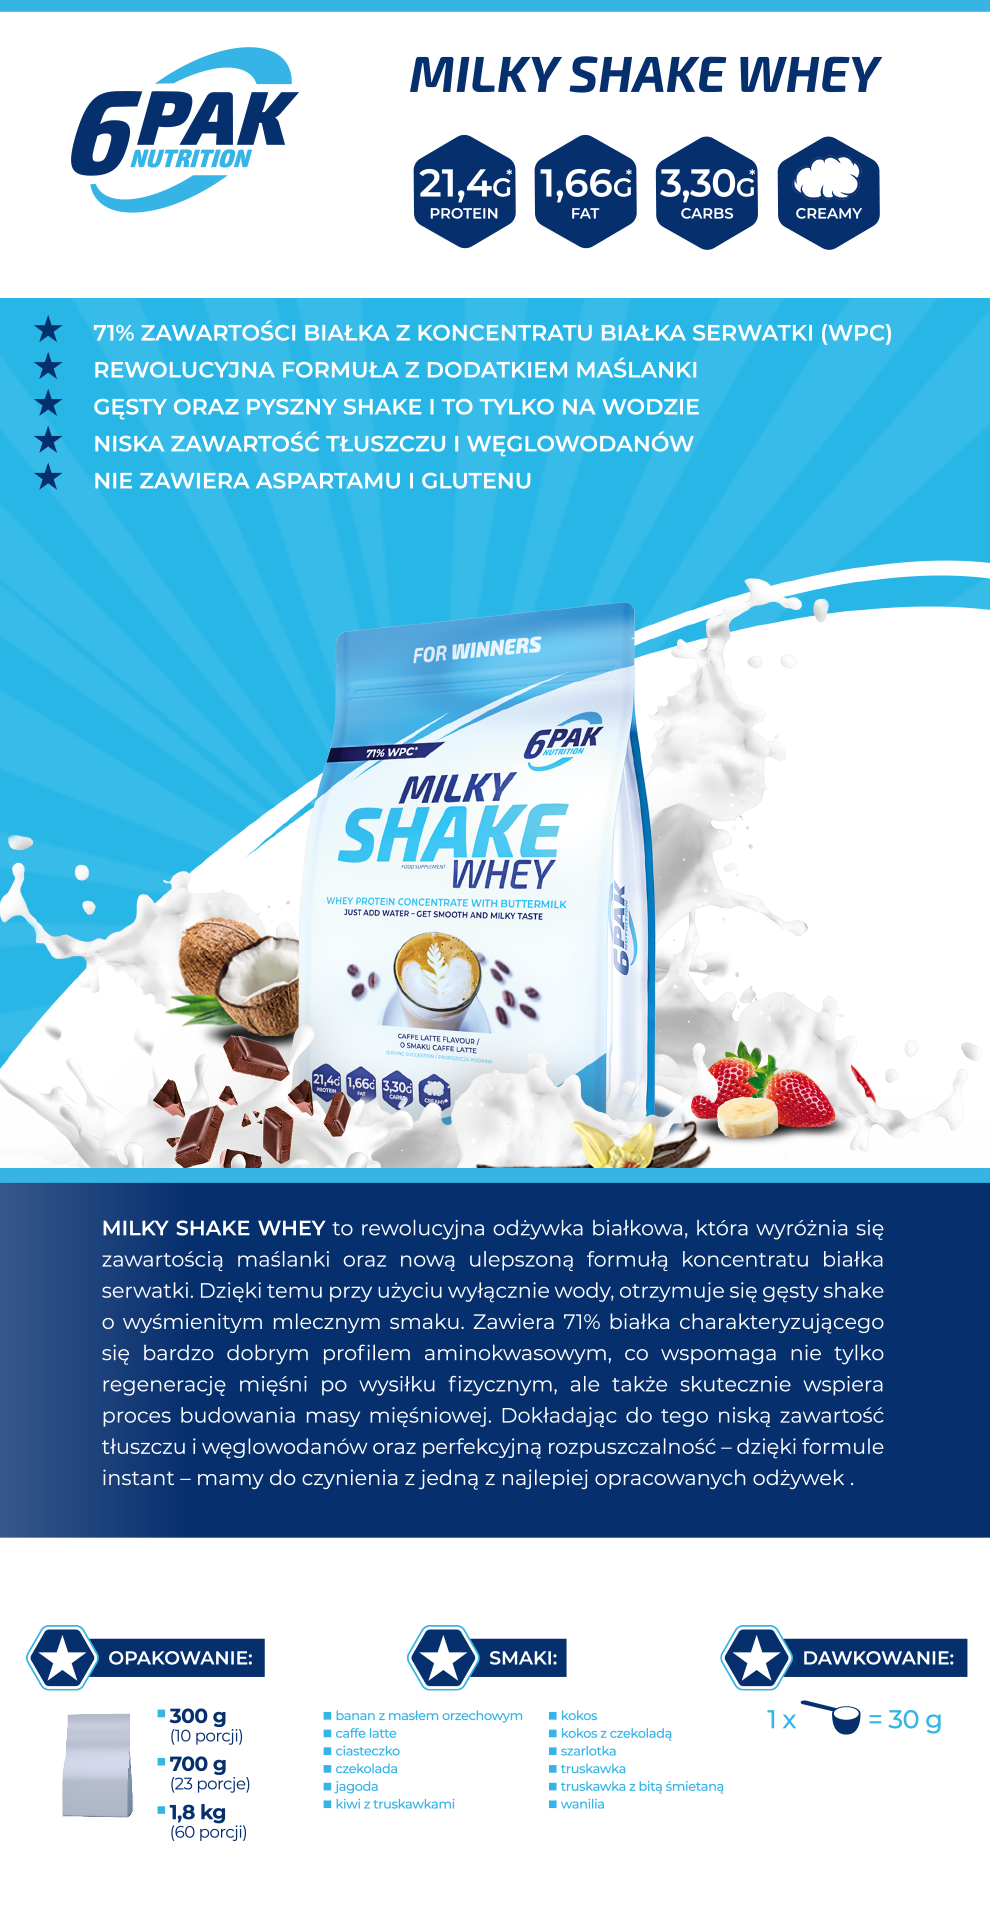 6PAK Nutrition Milky Shake Whey -3x 300g